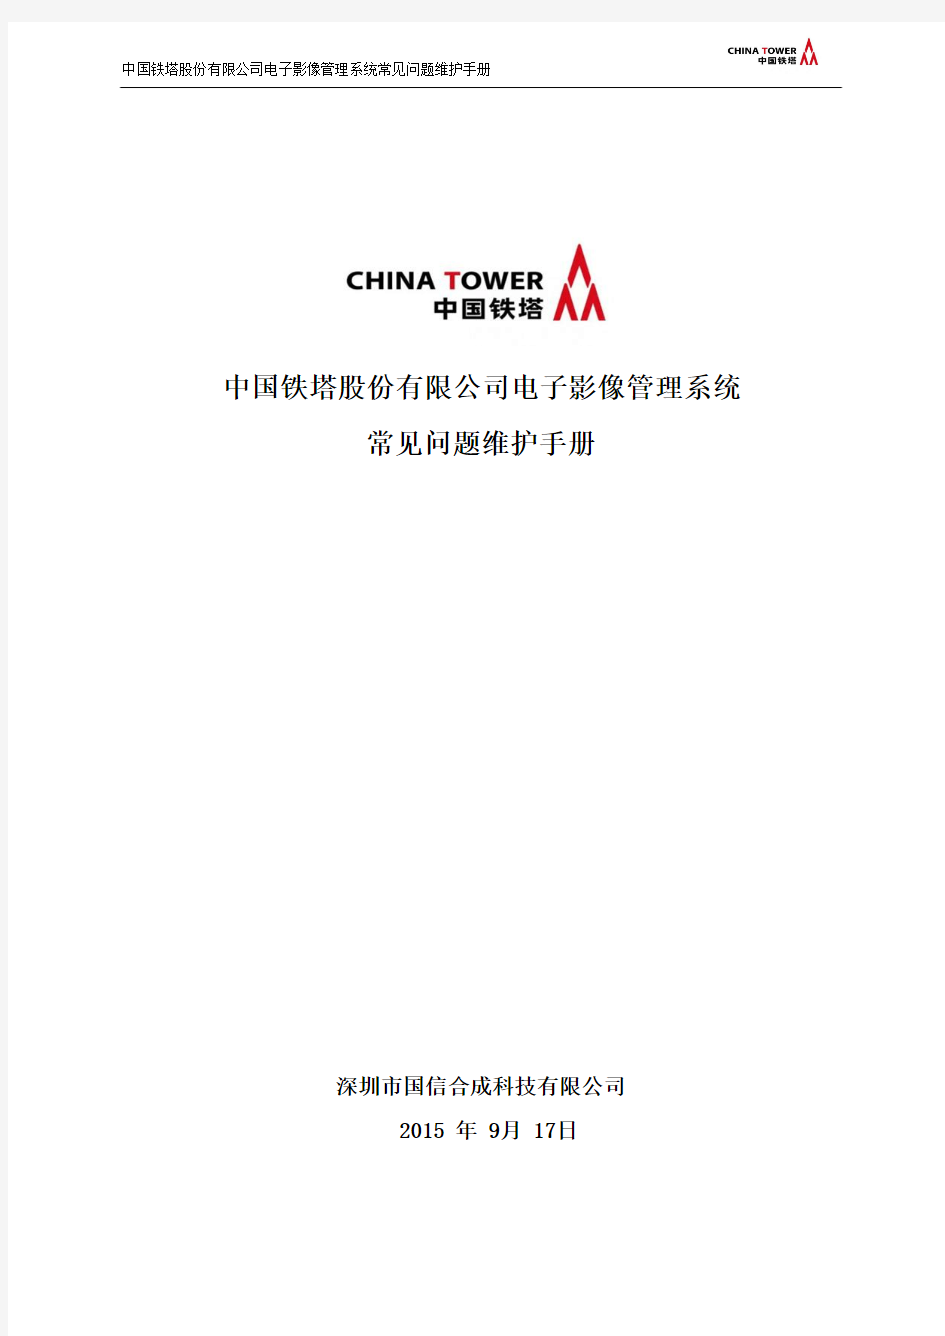 中国铁塔股份有限公司电子影像管理系统常见问题维护手册V1.0剖析